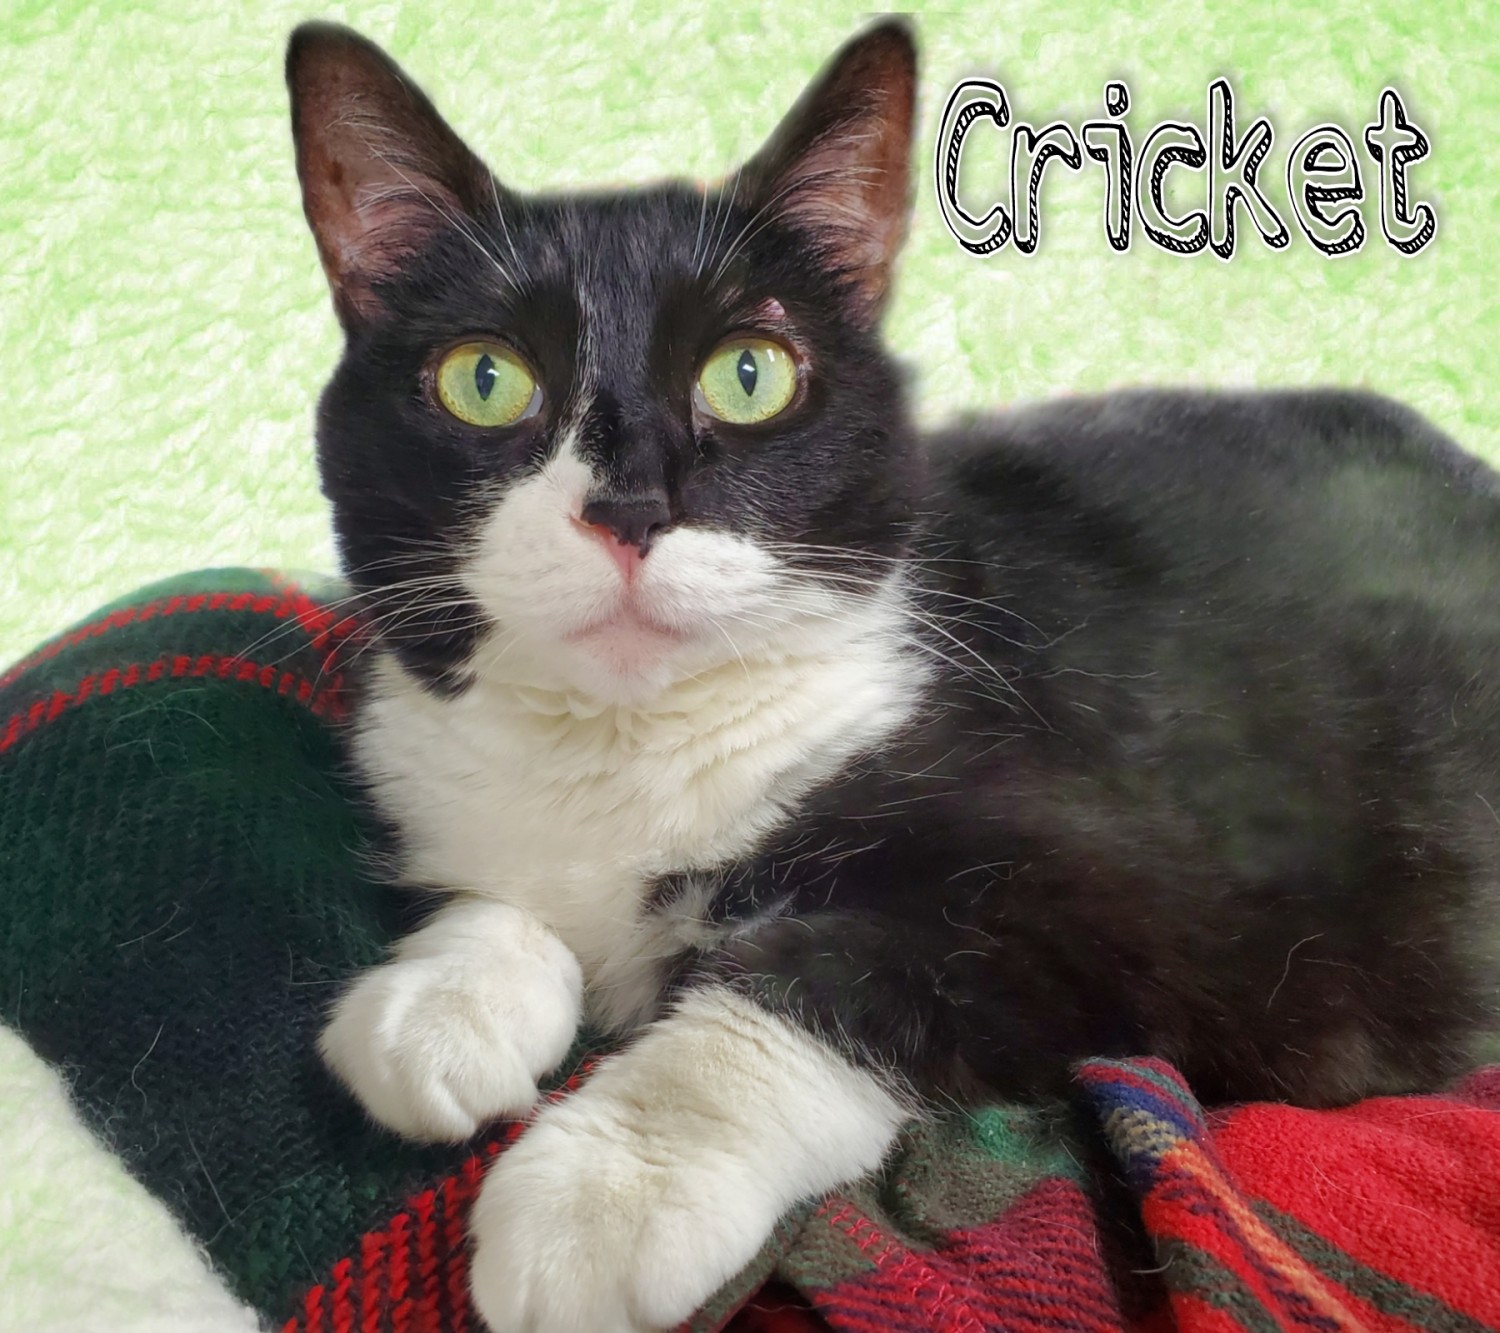 Cricket, Hospital Cat